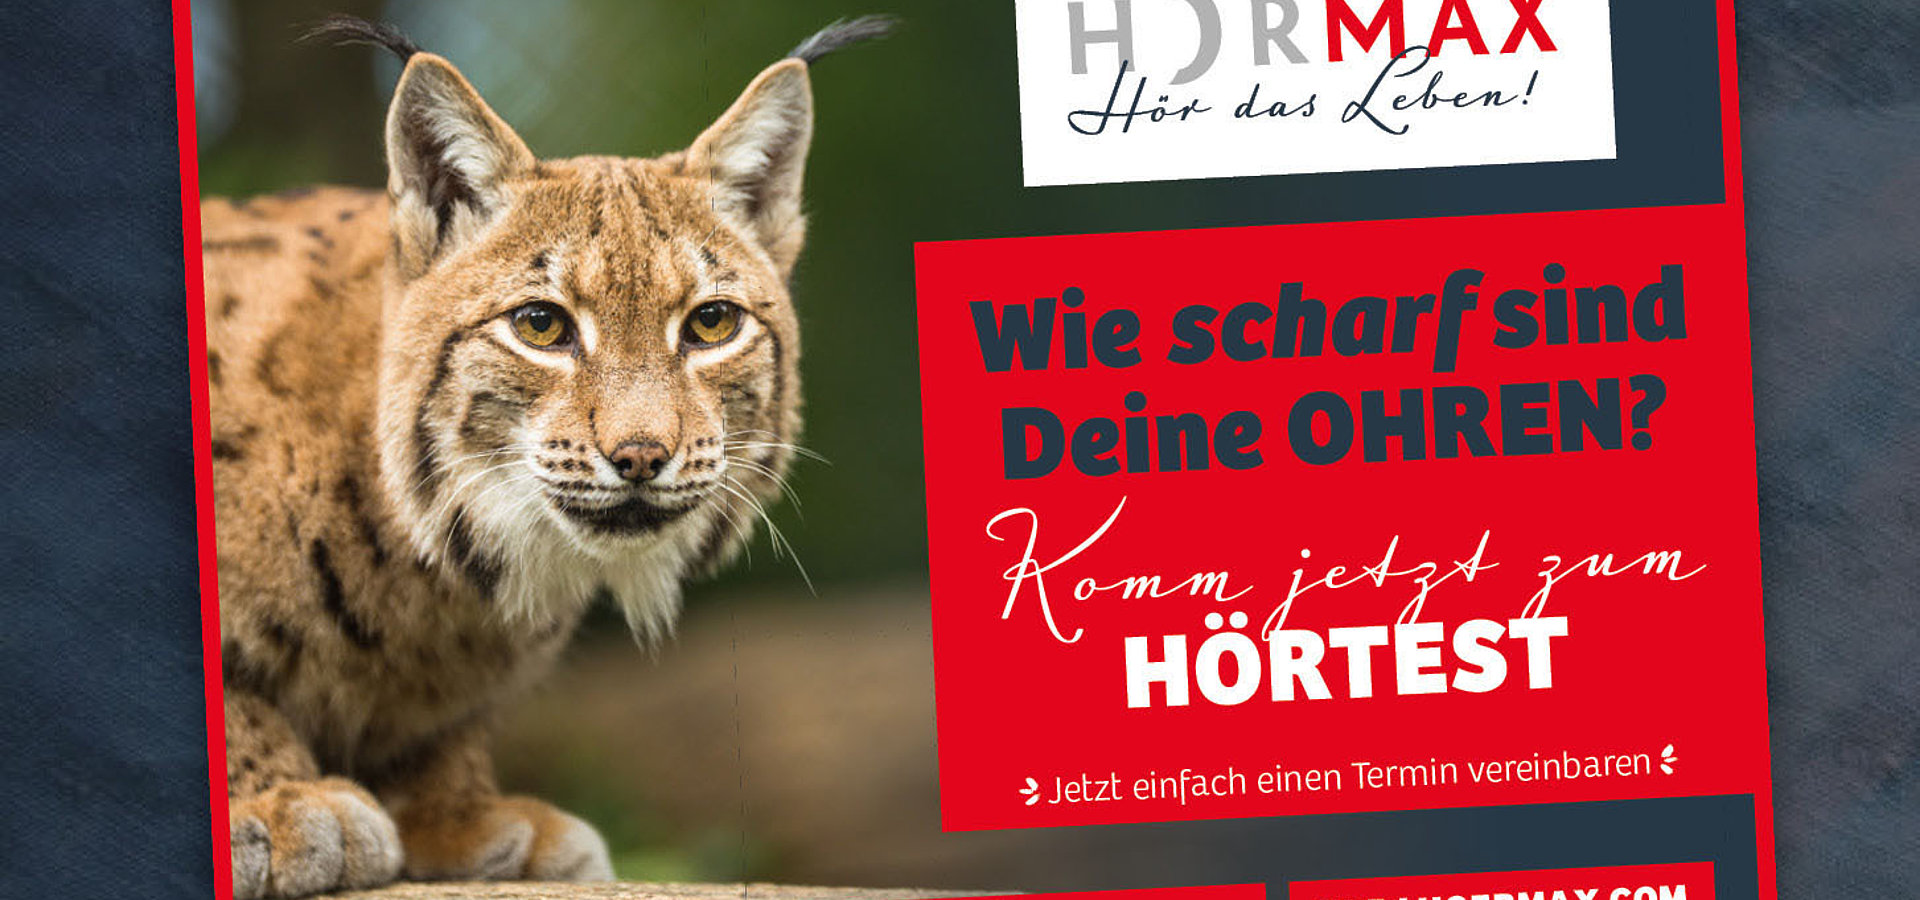 Zeitungsanzeigen: Imagekampagne für Hörmax / 2017